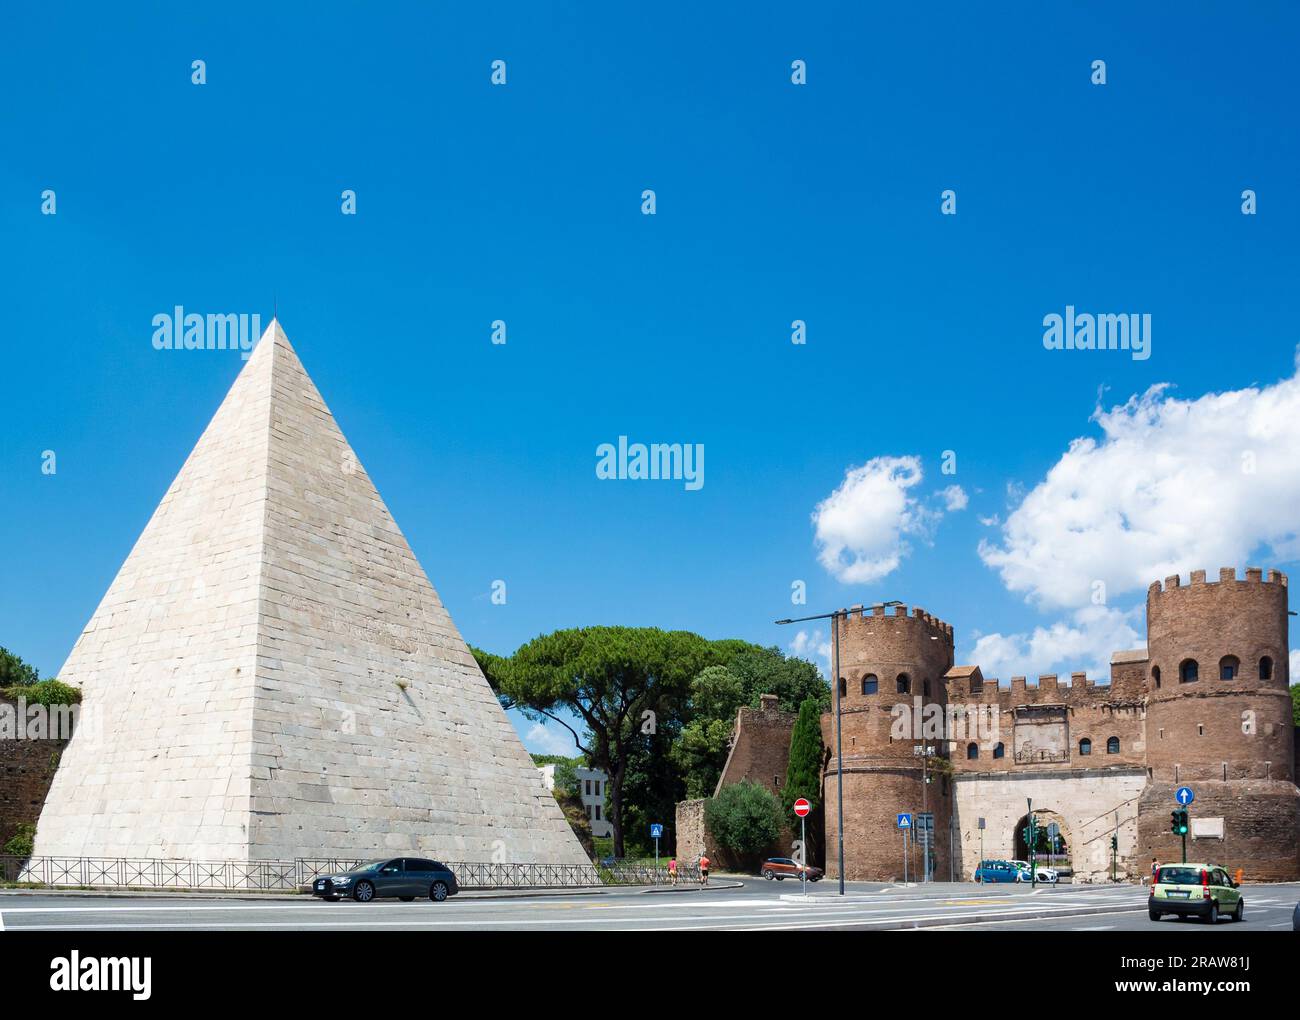 The pyramid of Cestius (in Italian, Piramide di Caio Cestio or Piramide ...